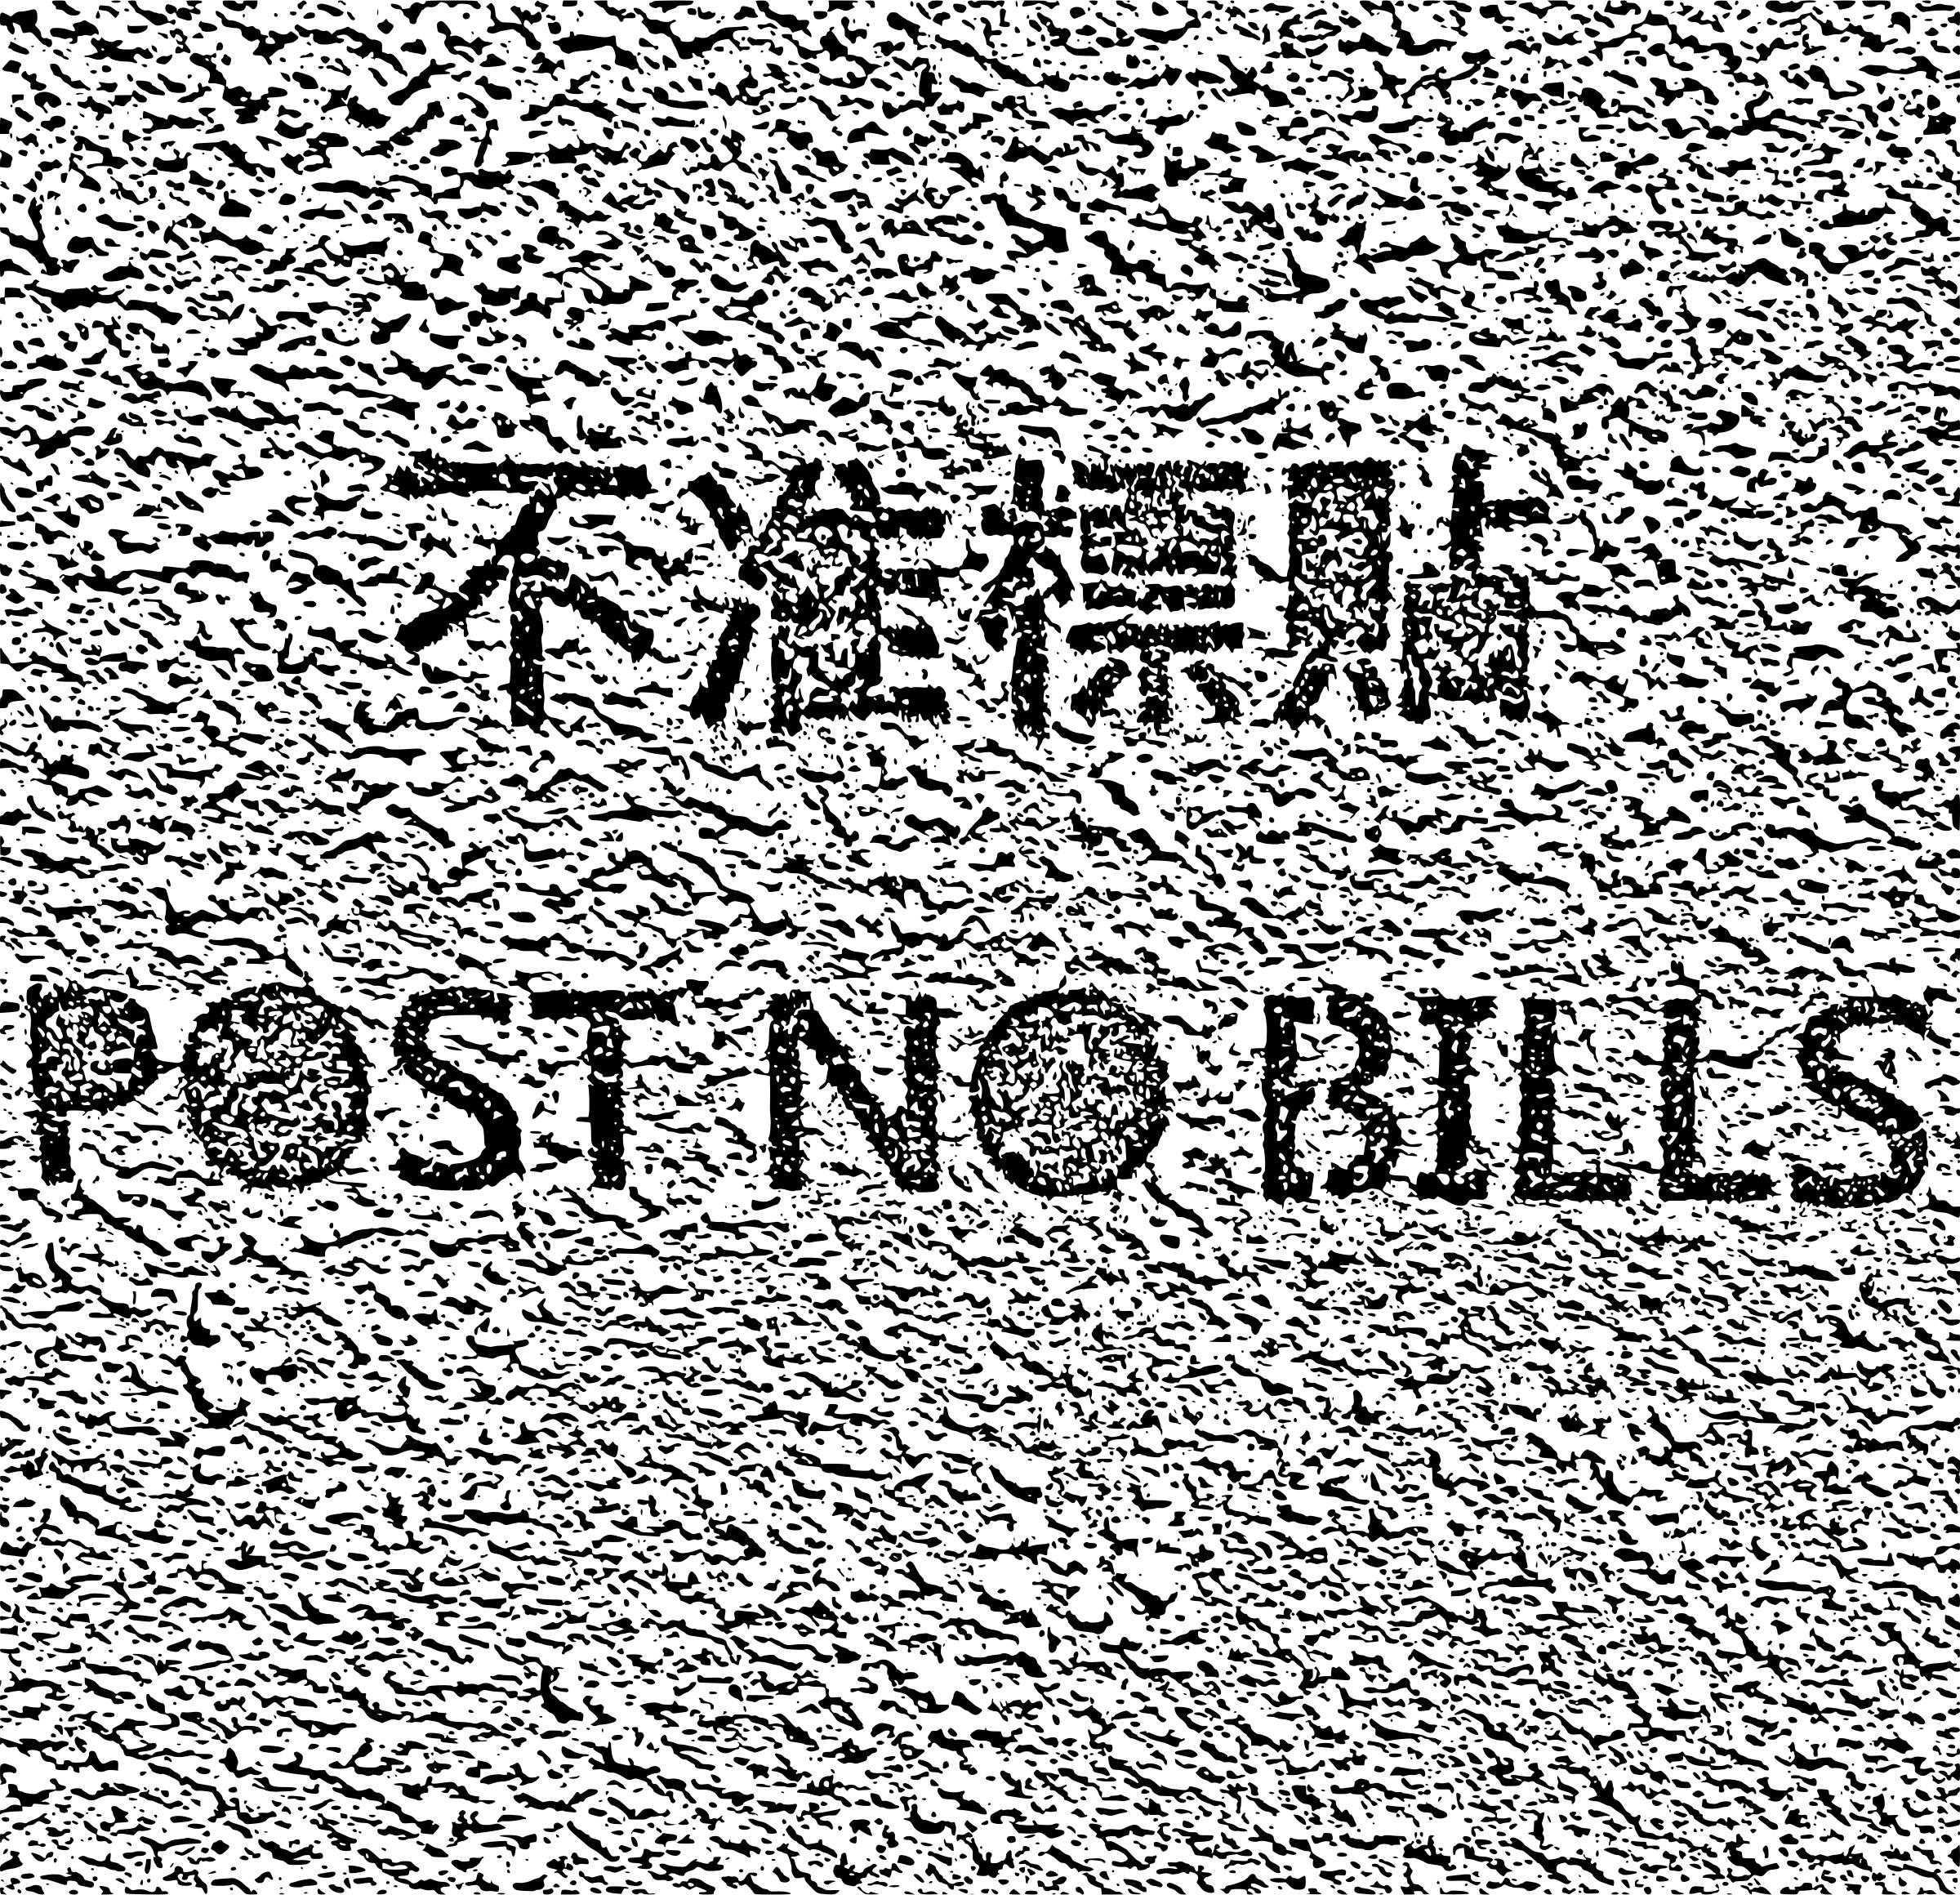 Post no bills hong kong photocopy png